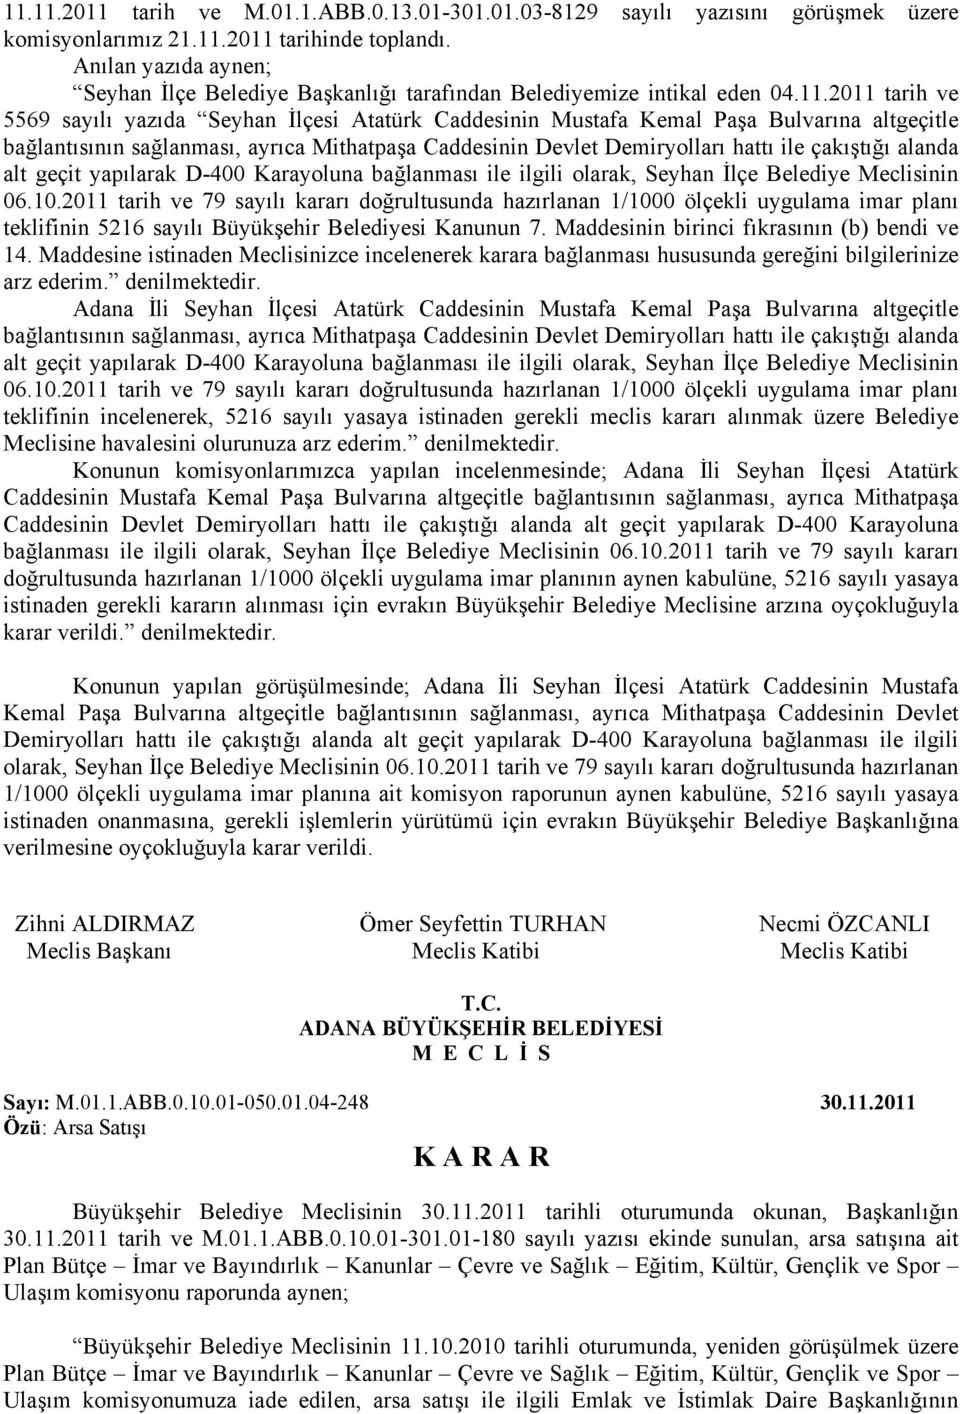 2011 tarih ve 5569 sayılı yazıda Seyhan İlçesi Atatürk Caddesinin Mustafa Kemal Paşa Bulvarına altgeçitle bağlantısının sağlanması, ayrıca Mithatpaşa Caddesinin Devlet Demiryolları hattı ile